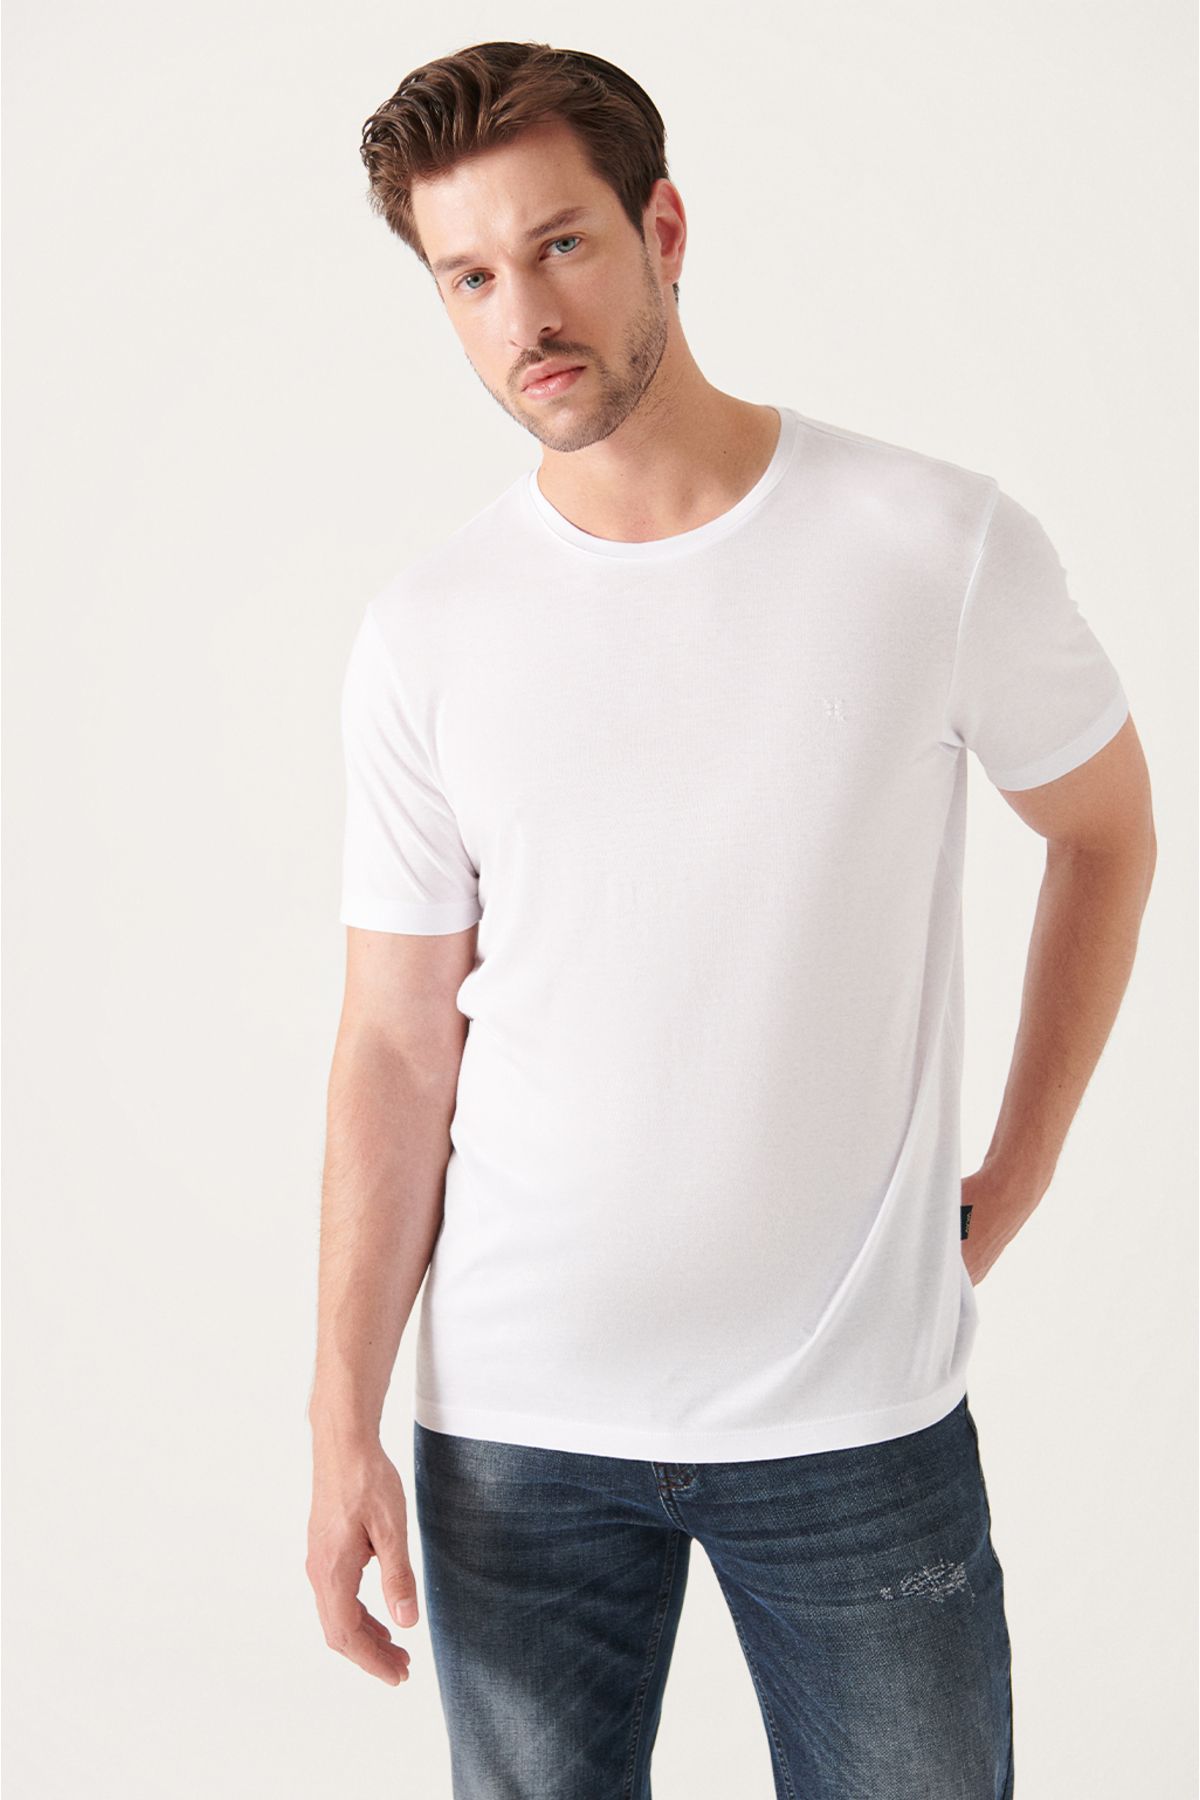 Avva تی شرت مردانه سفید اولترا سافت یقه ساده و استاندارد با برش معمولی مدل B001171